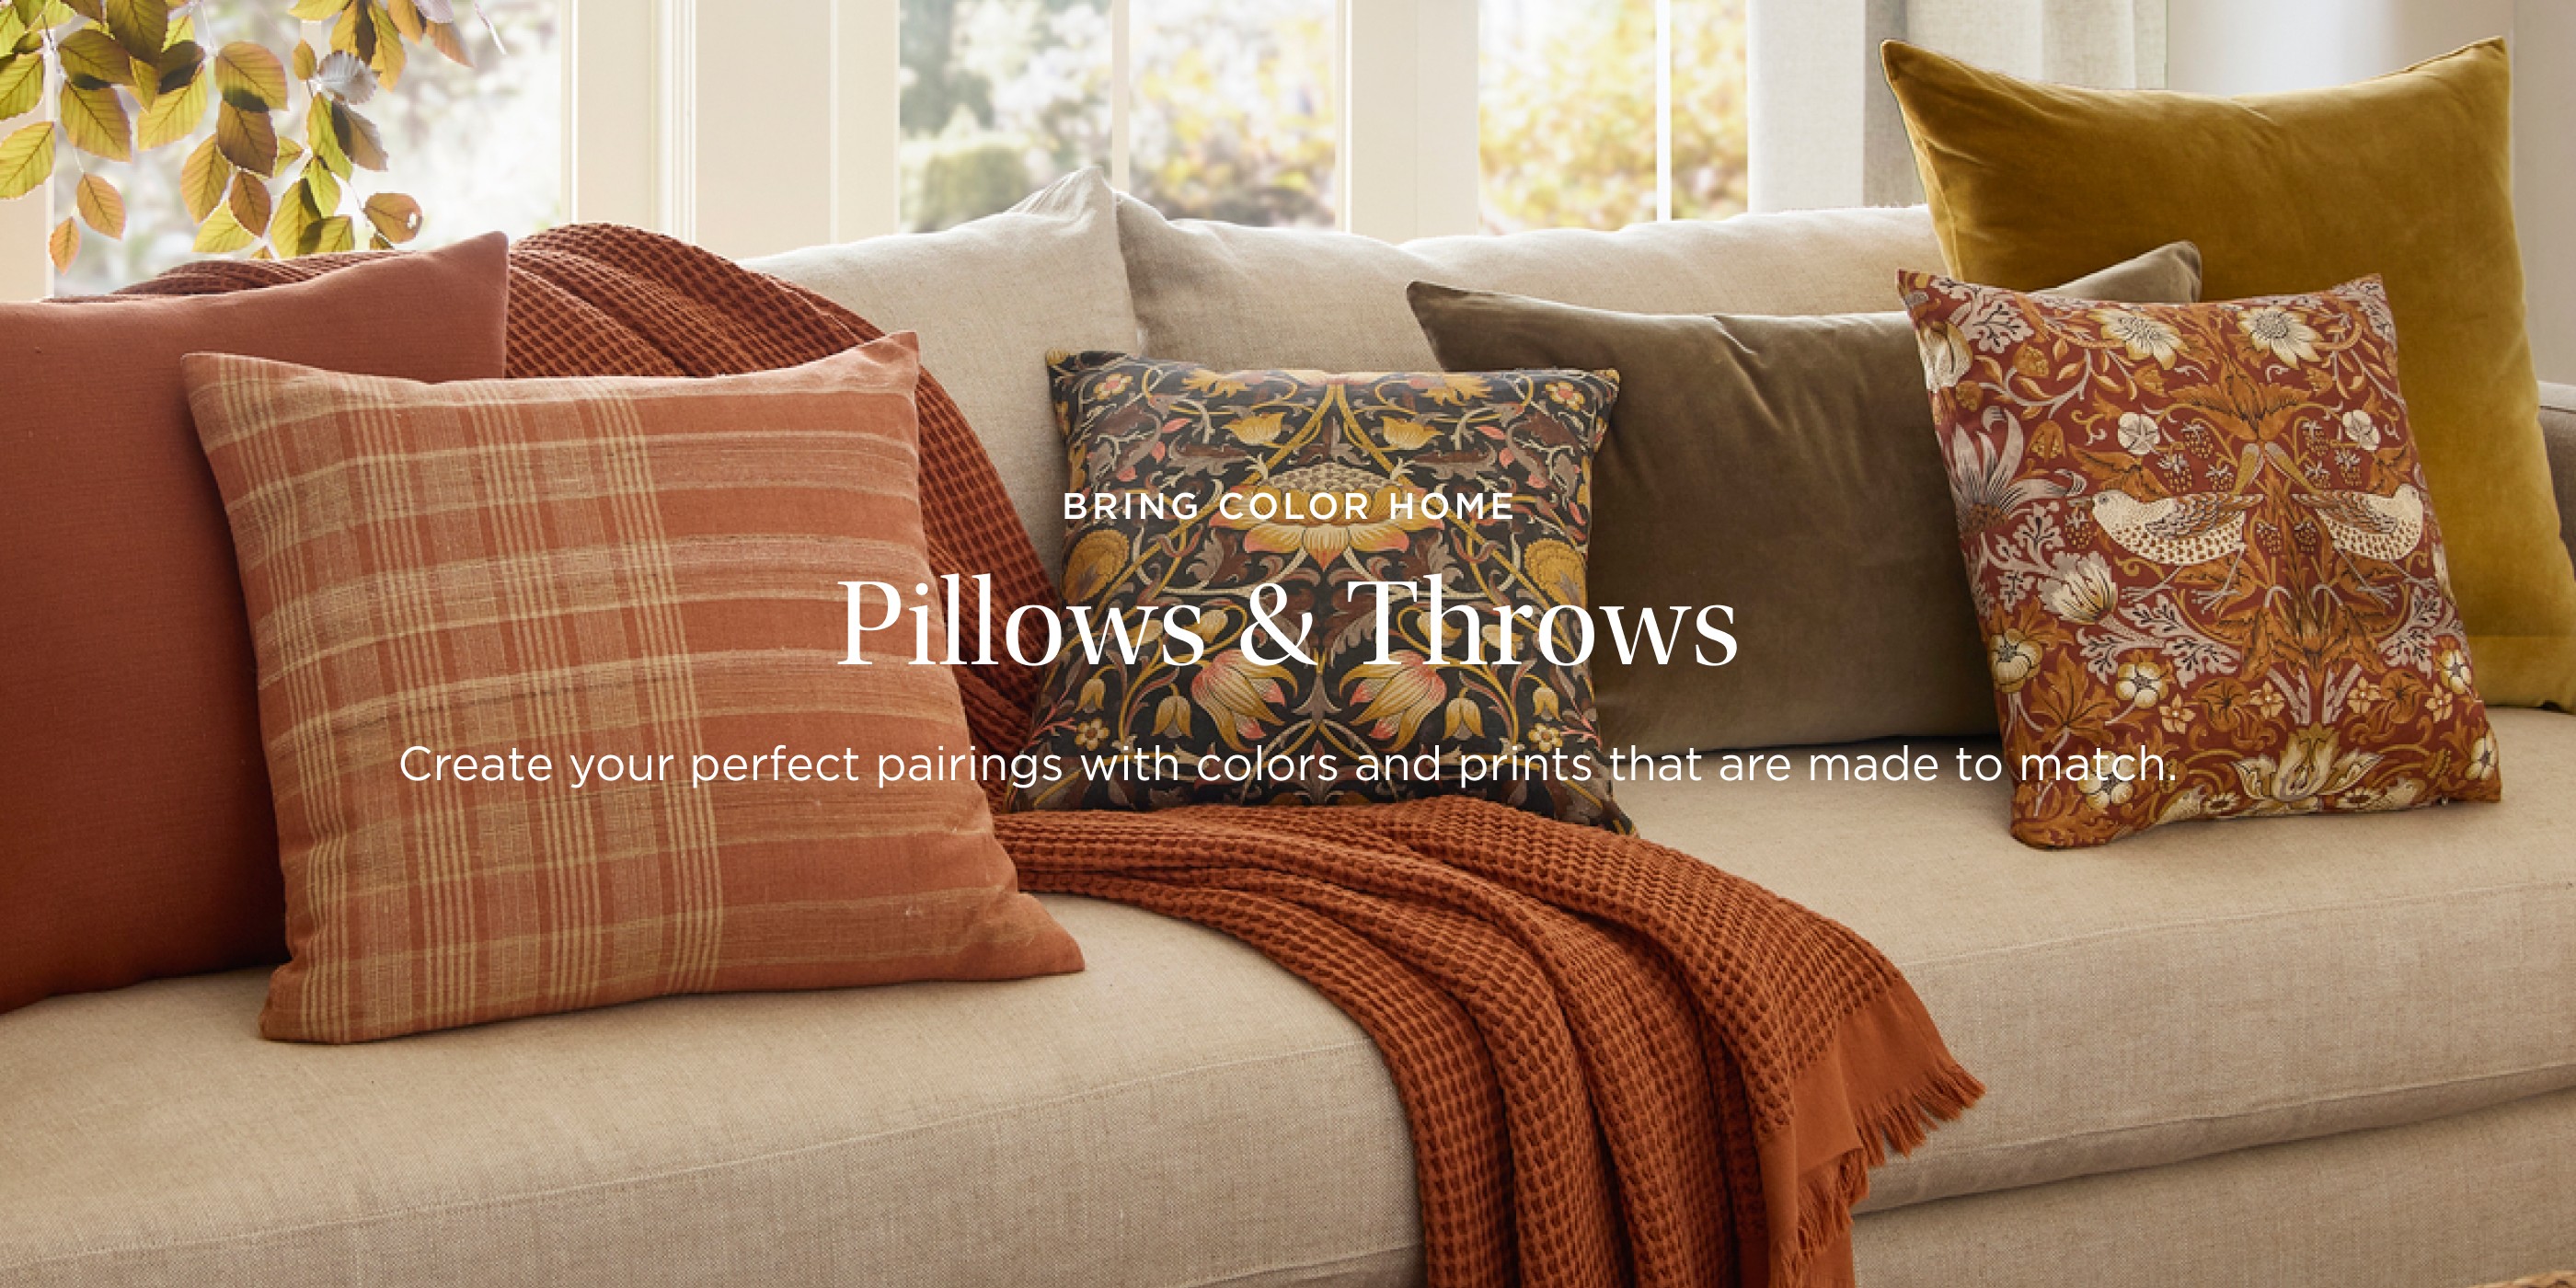 Bring Color Home: Pillows & Throws